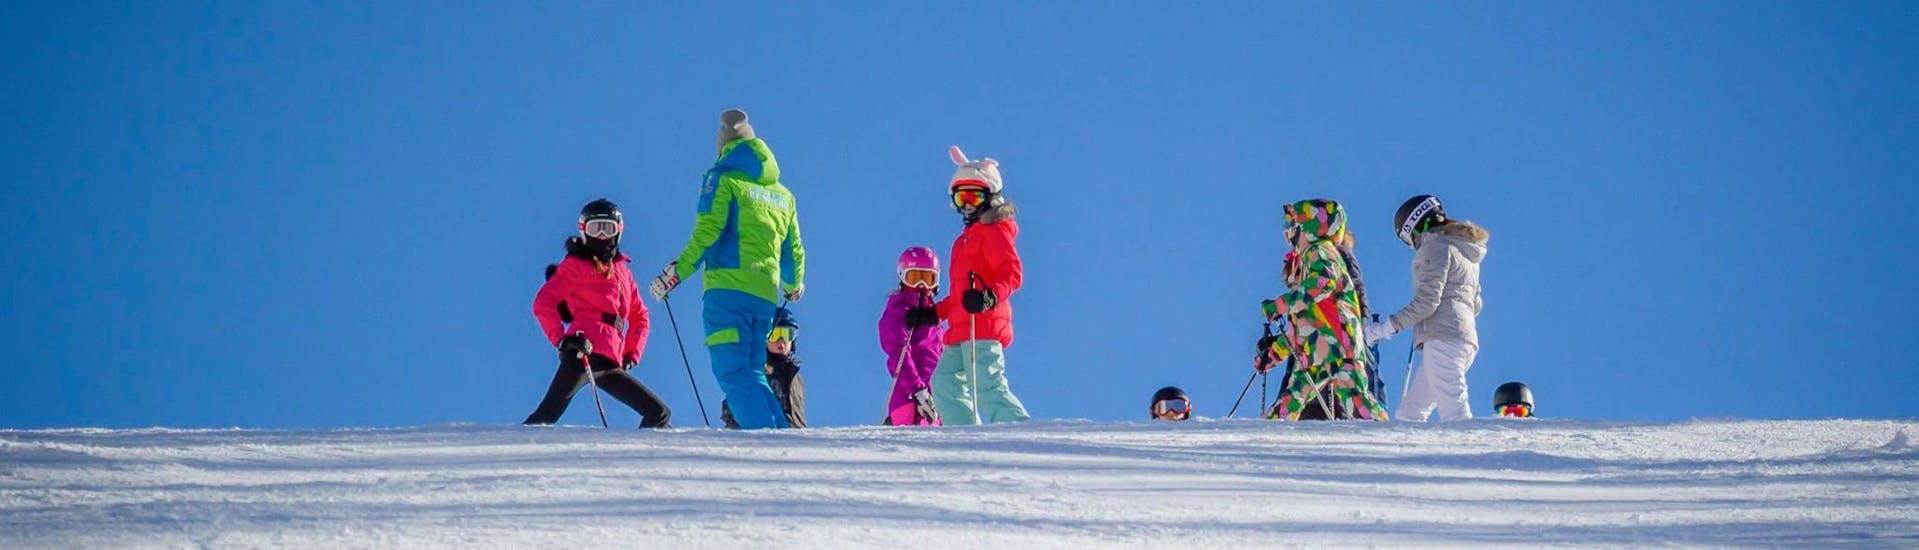 Lezioni di sci per bambini (4-14 anni) per tutti i livelli.